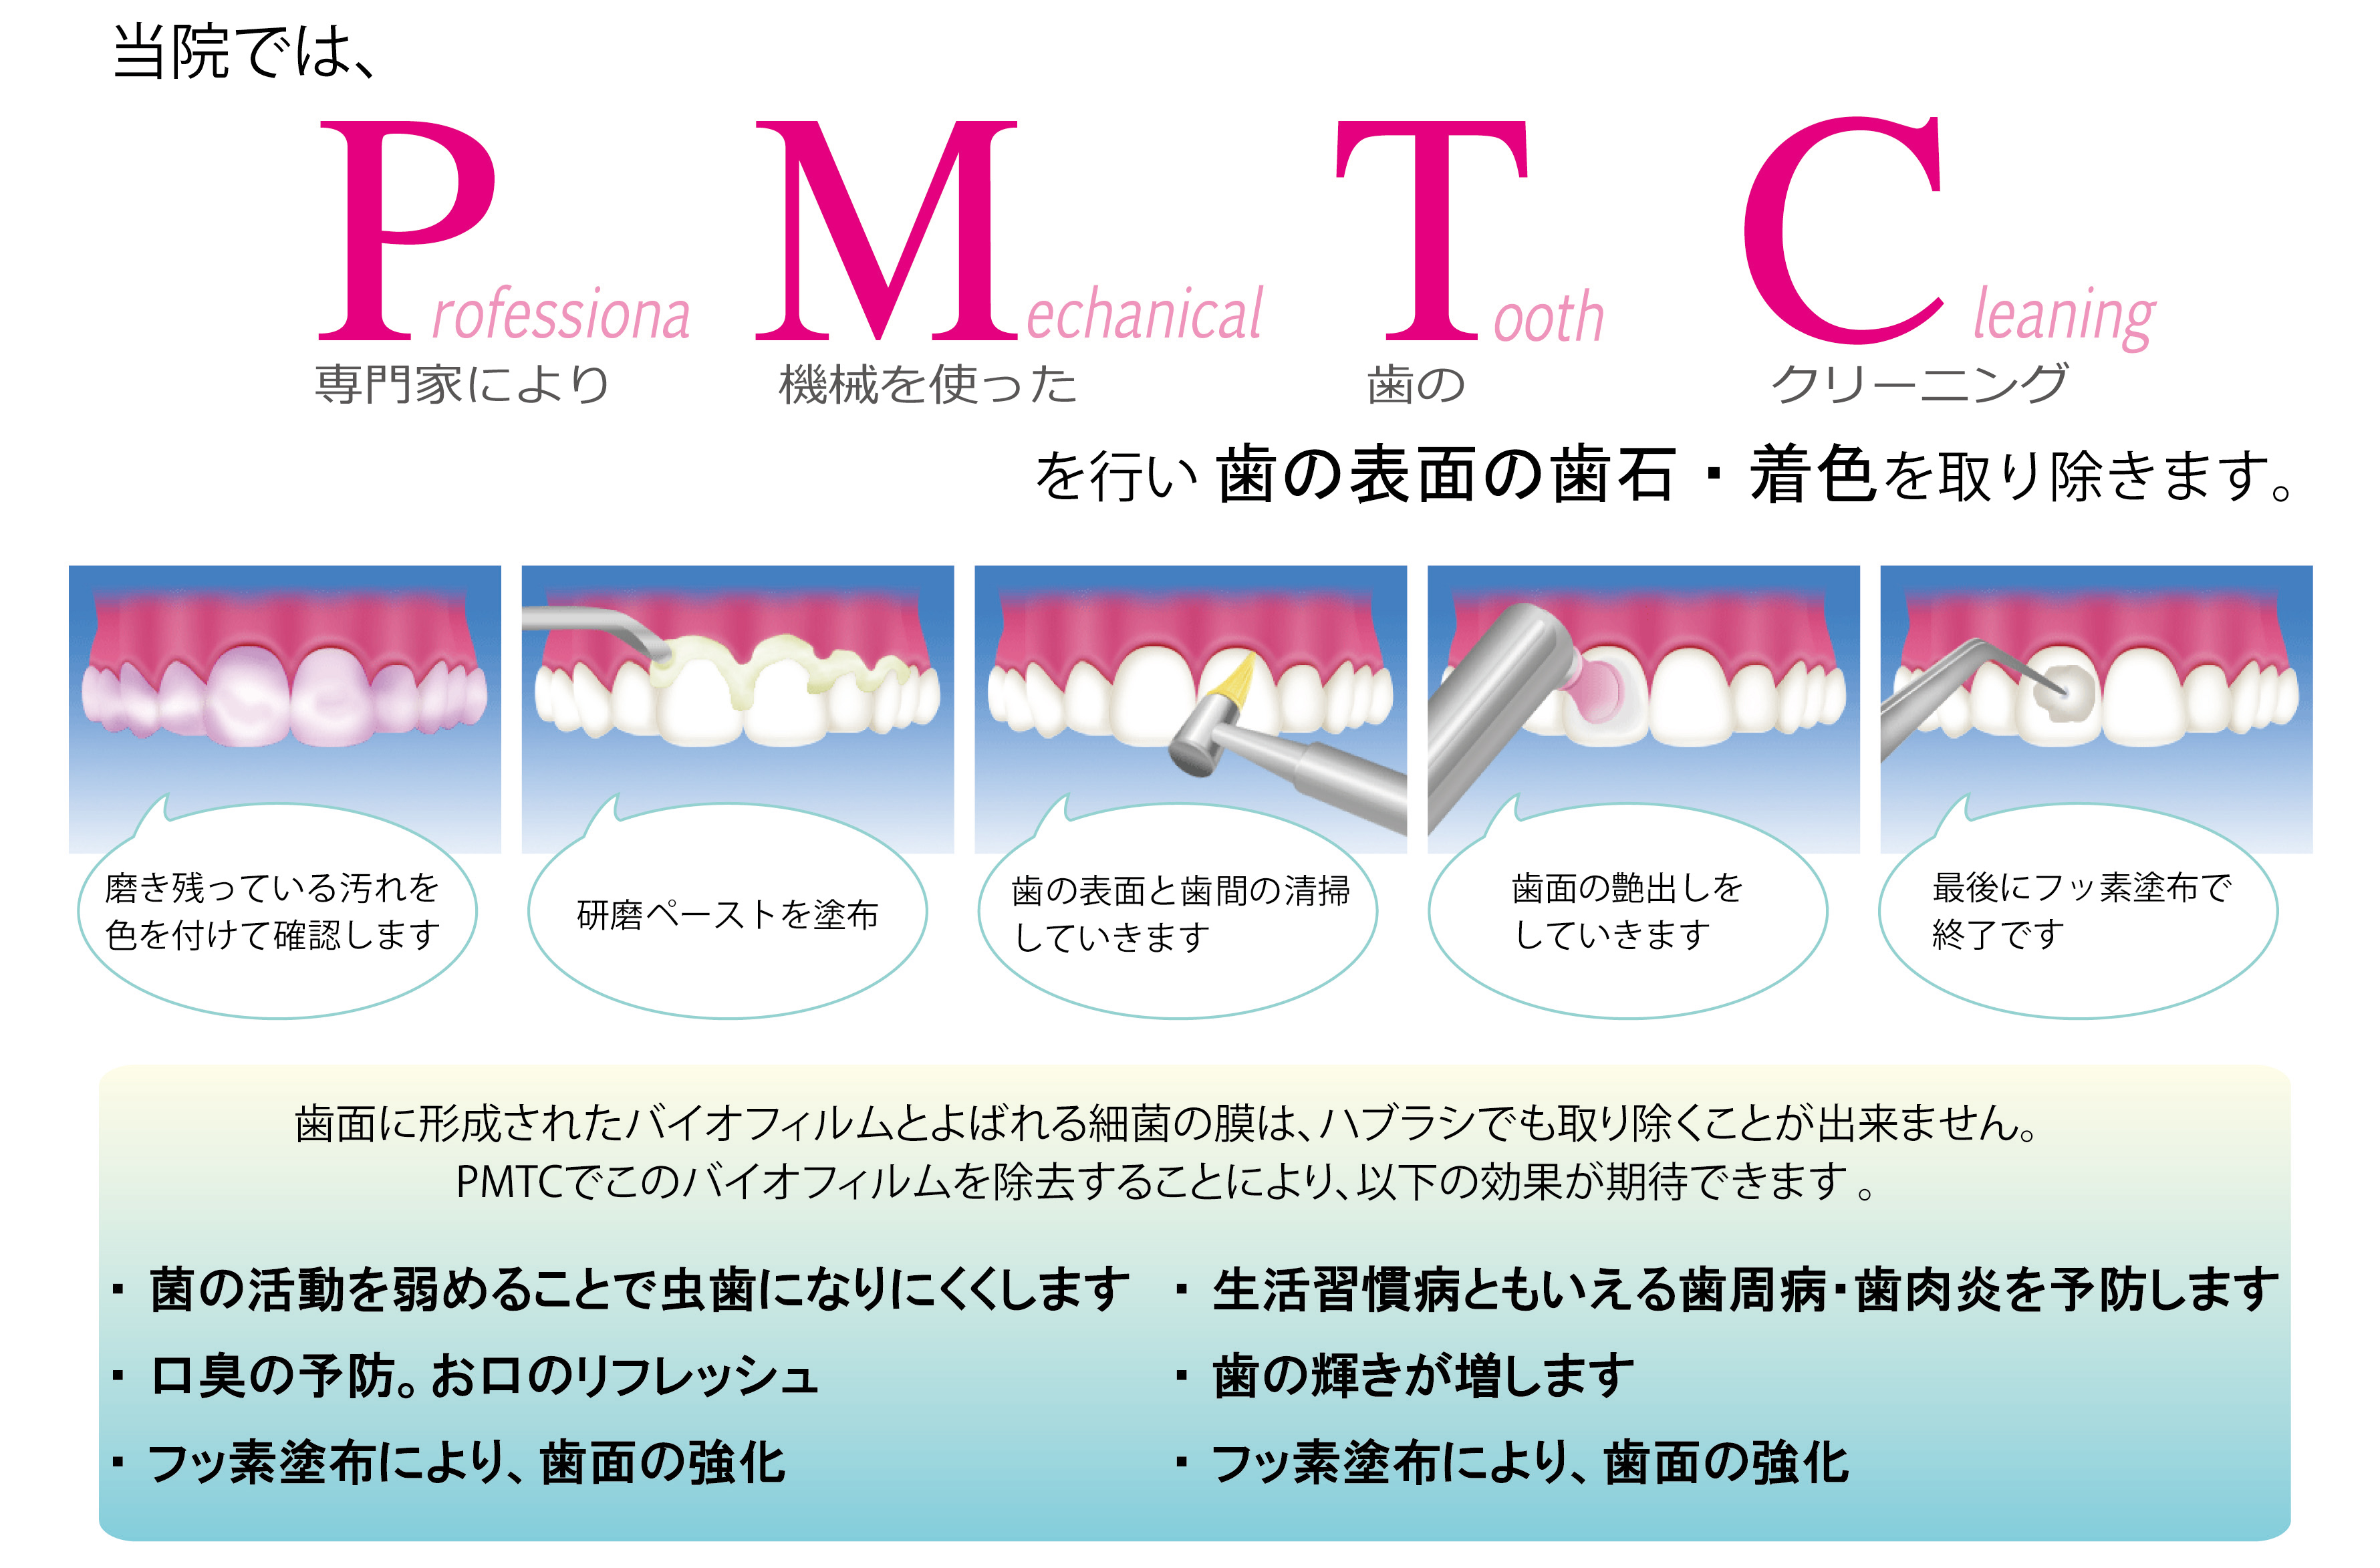 歯 の クリーニング pmtc 料金